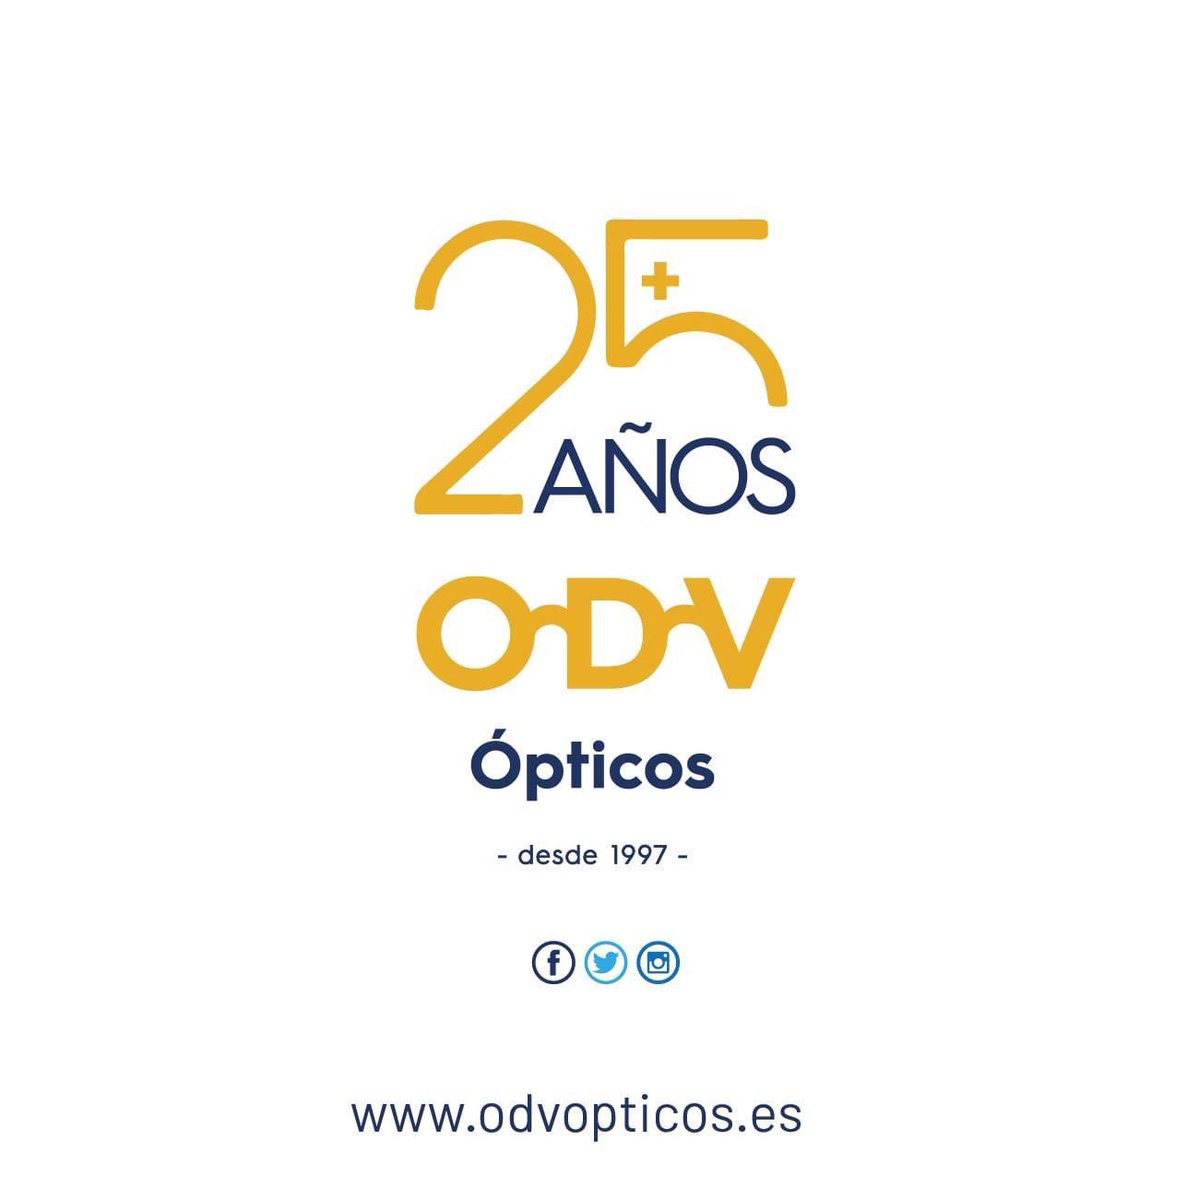 ODV Ópticos expertos en salud visual infantil. 🔝 Calidad, durabilidad y resistencia con la garantía.

✉︎ info@odvopticos.es

☎︎ 981 52 32 74

✎odvopticos.es
.
.
.
#gafasdesolniños #coleccionss23 #ODVopticos #ODVconsejos #seventiesvibes  #apruebadeniños